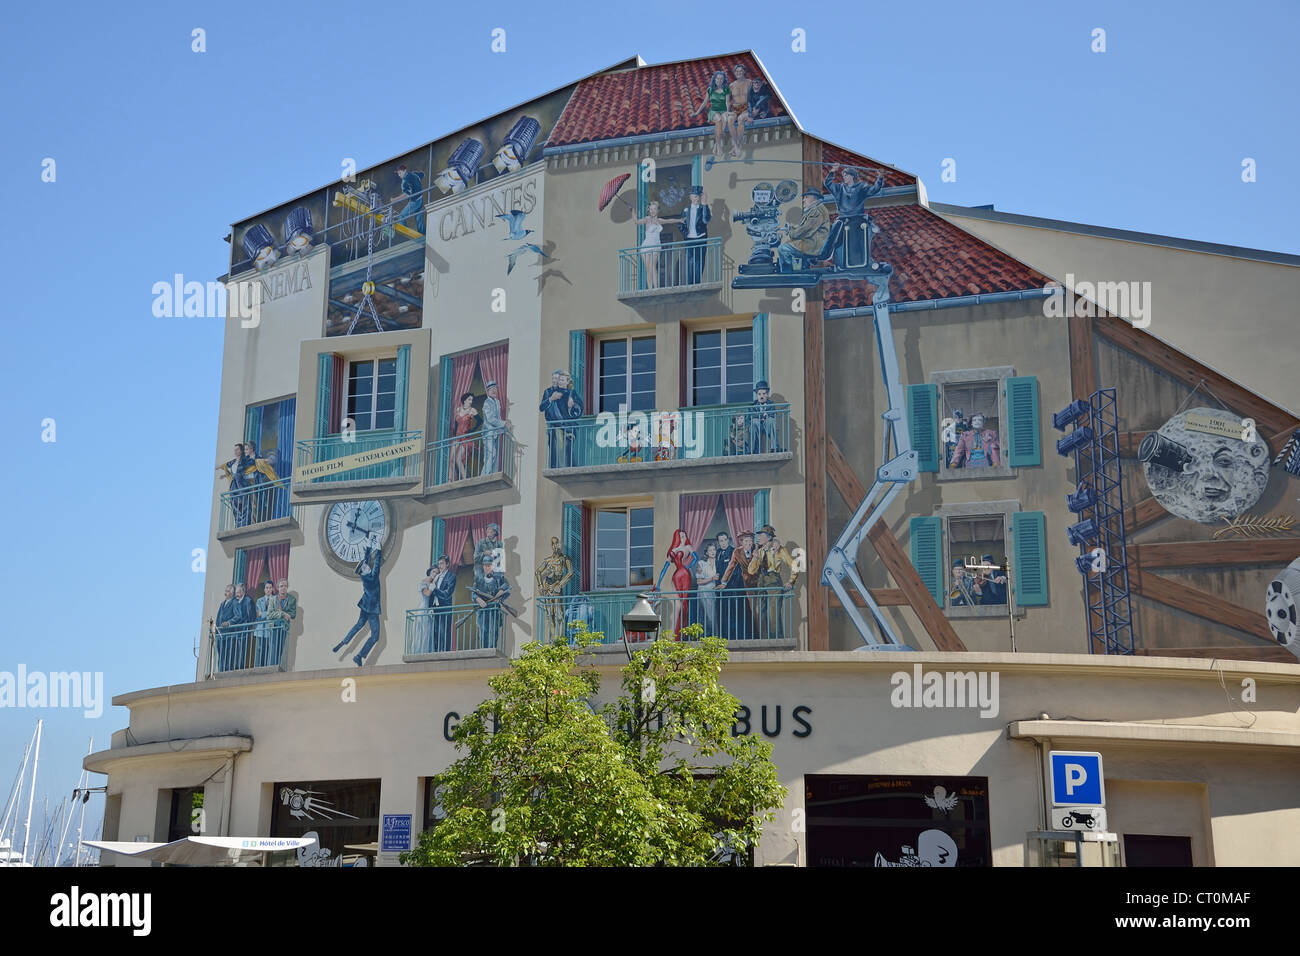 Cannes Cinema Mural, Place Bernard Cornut-Gentille, Cannes, Côte d'Azur, Alpes-Maritimes, Provence-Alpes-Côte d'Azur, France Stock Photo